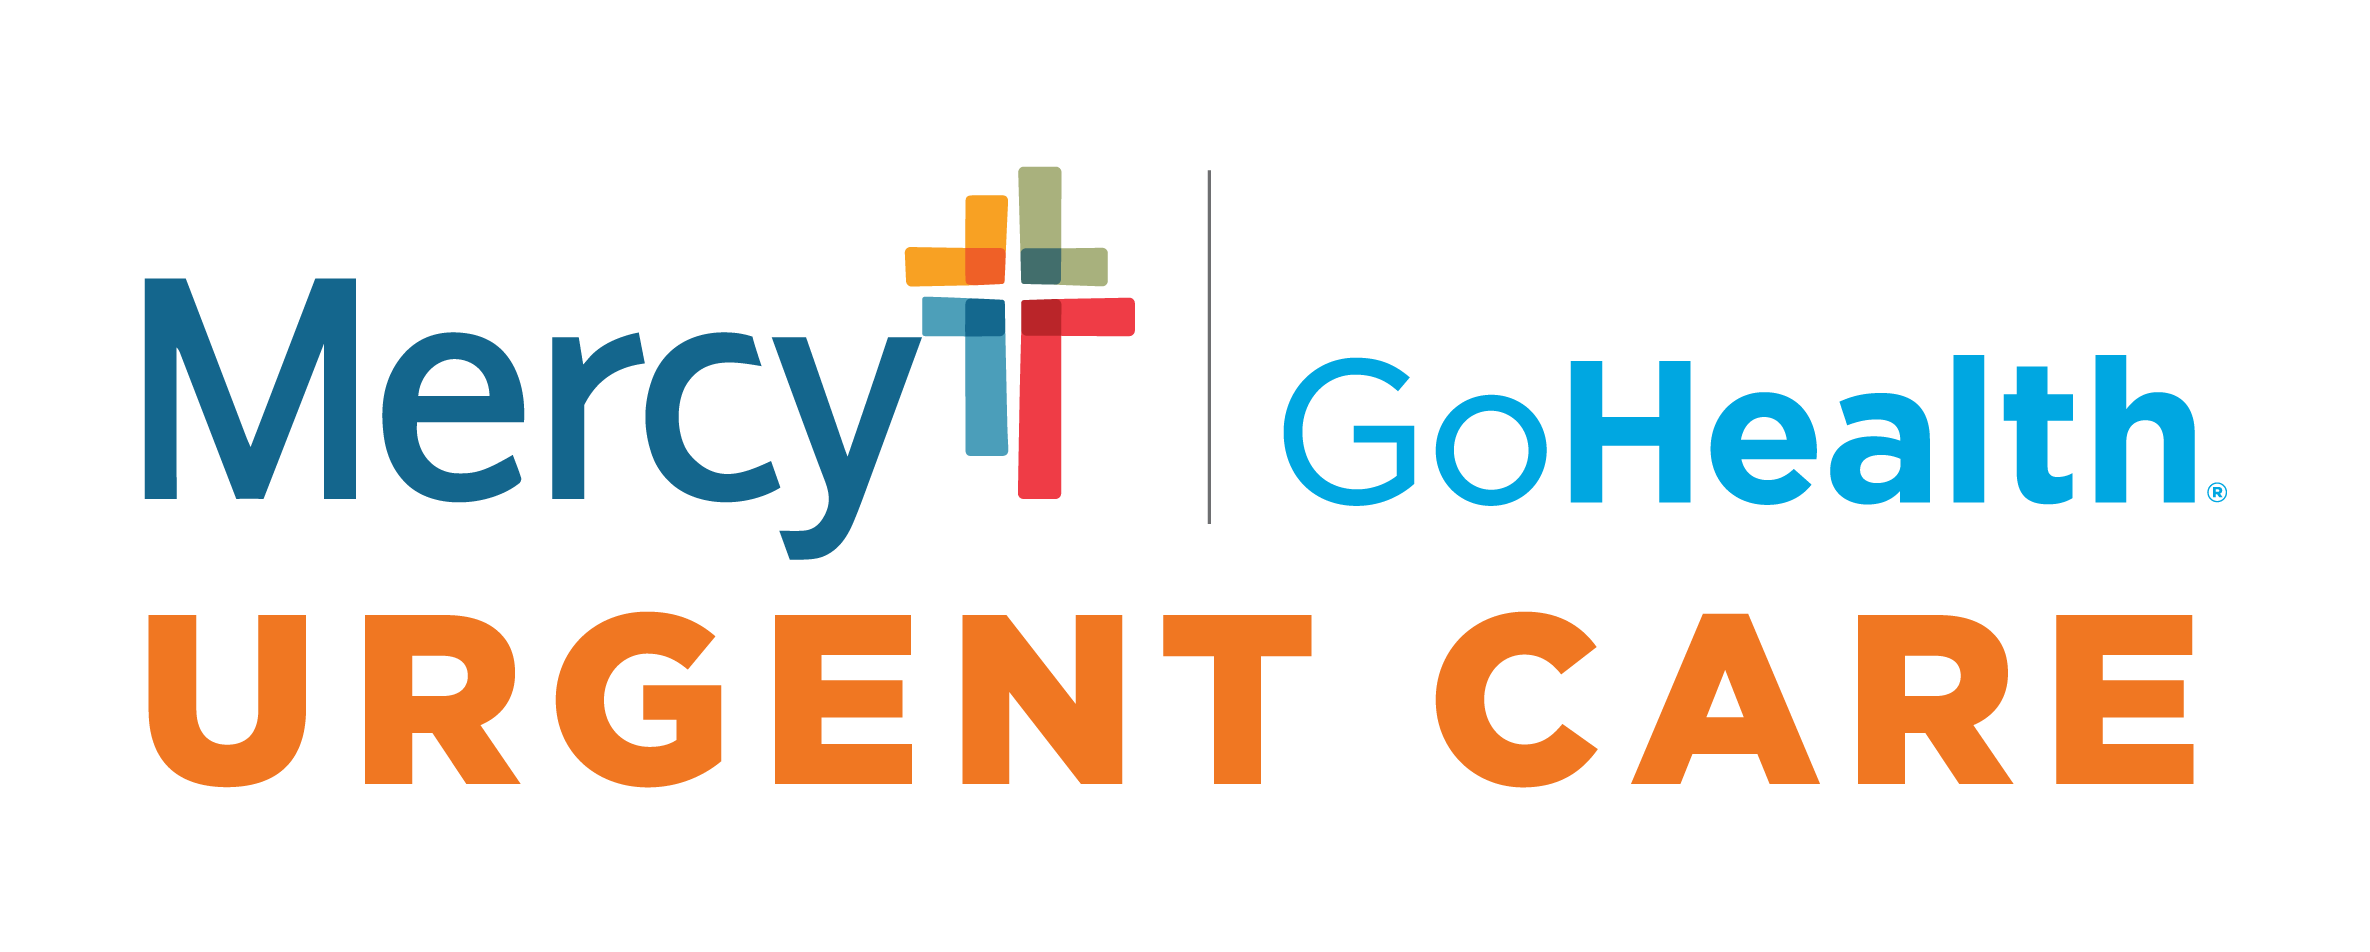 Mercy-GoHealth Urgent Care - Washington Logo